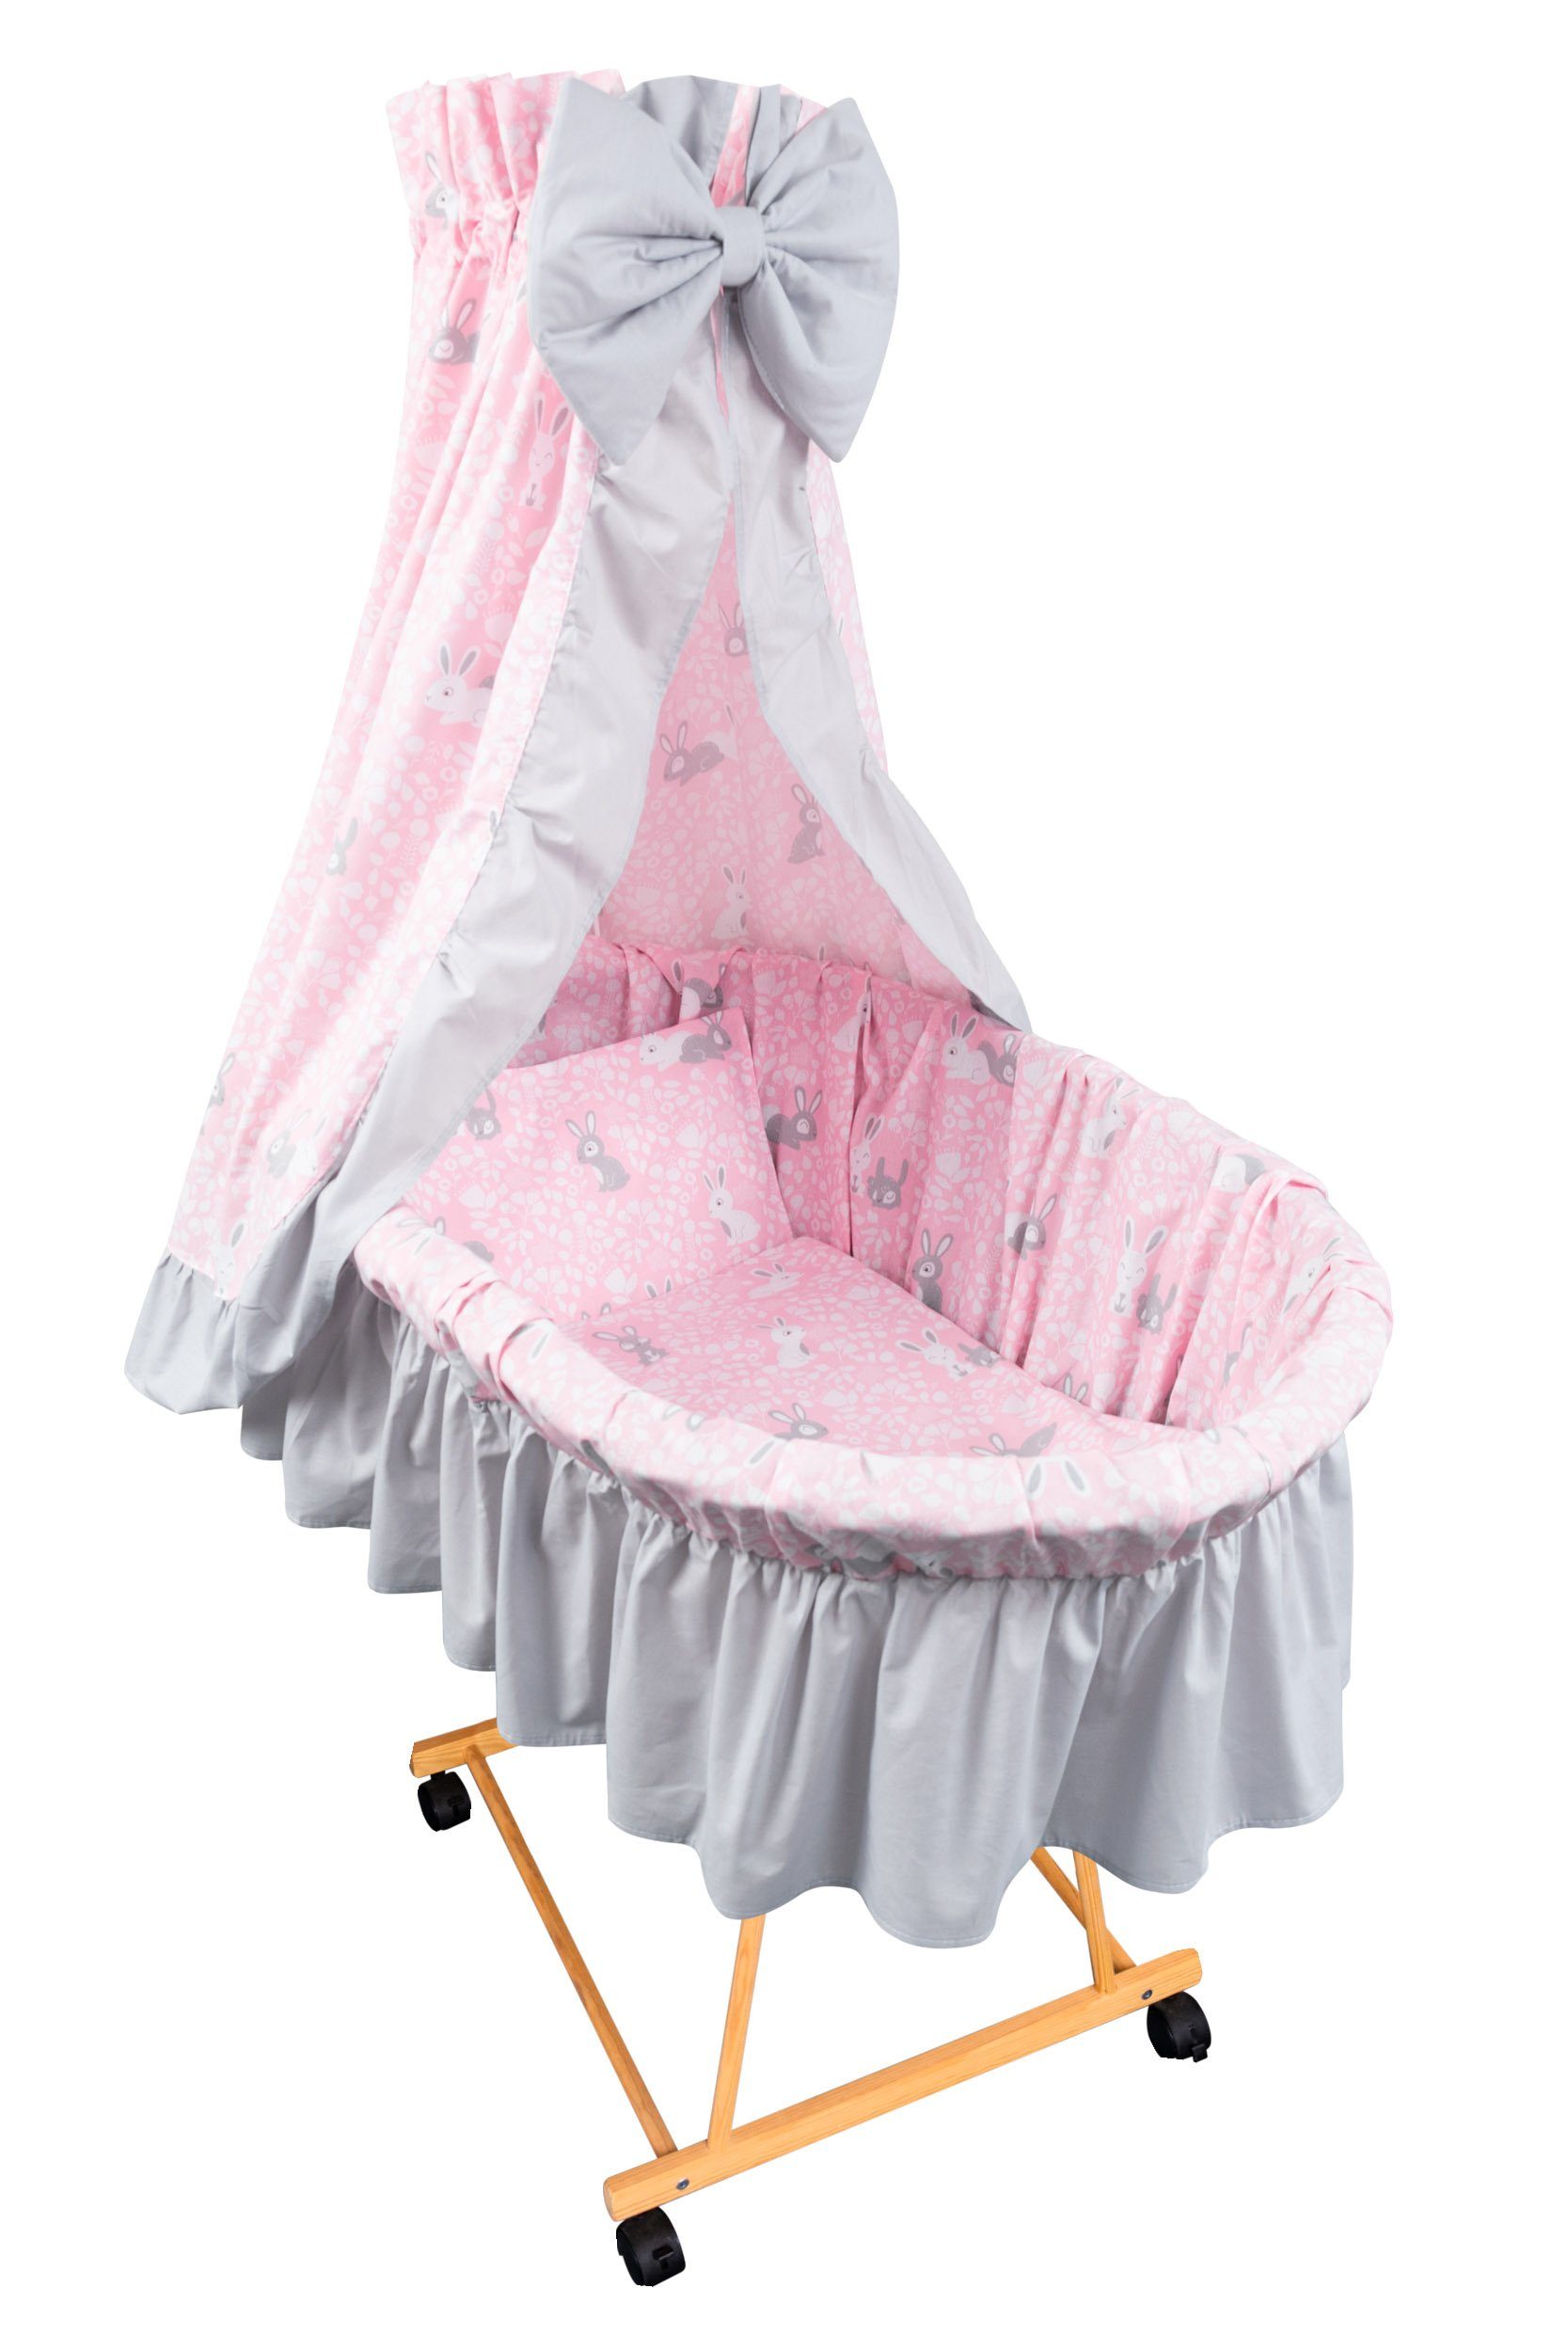 Kinderwagenset Weiß  ROSA Kinderwagenwäsche Garnitur  für Wiege Kissen  Mädchen 